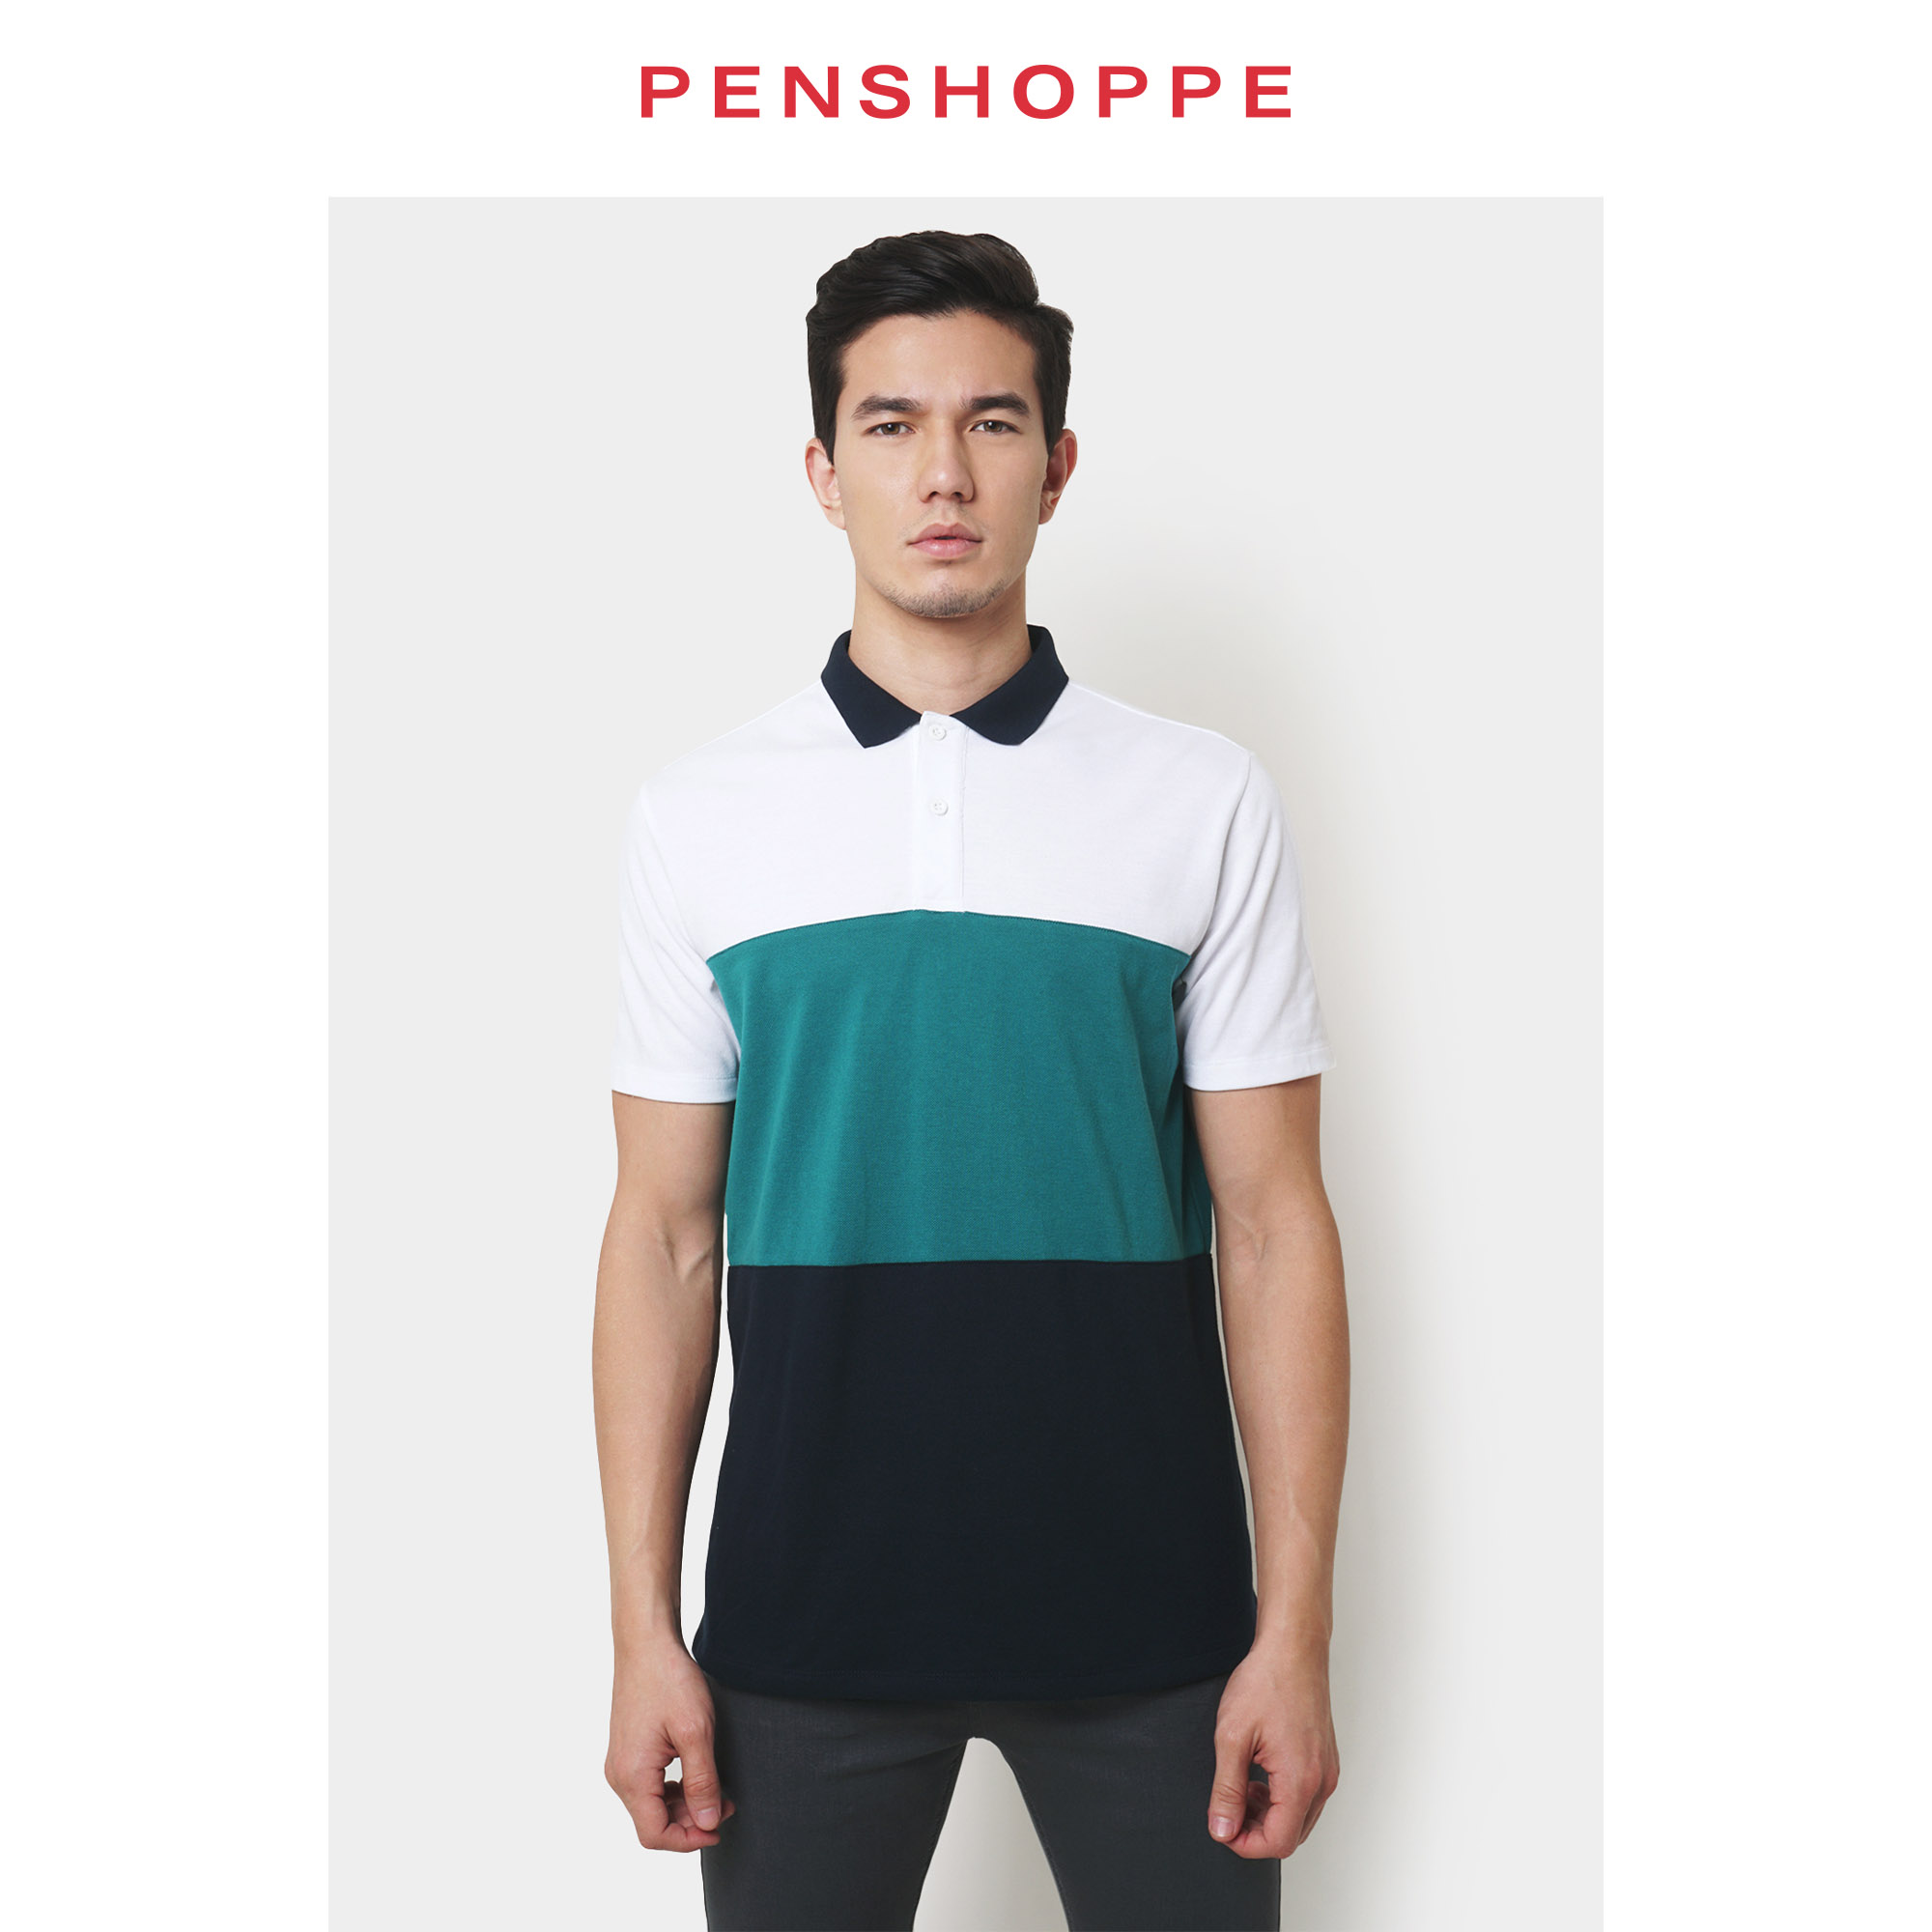 penshoppe polo shirt maroon